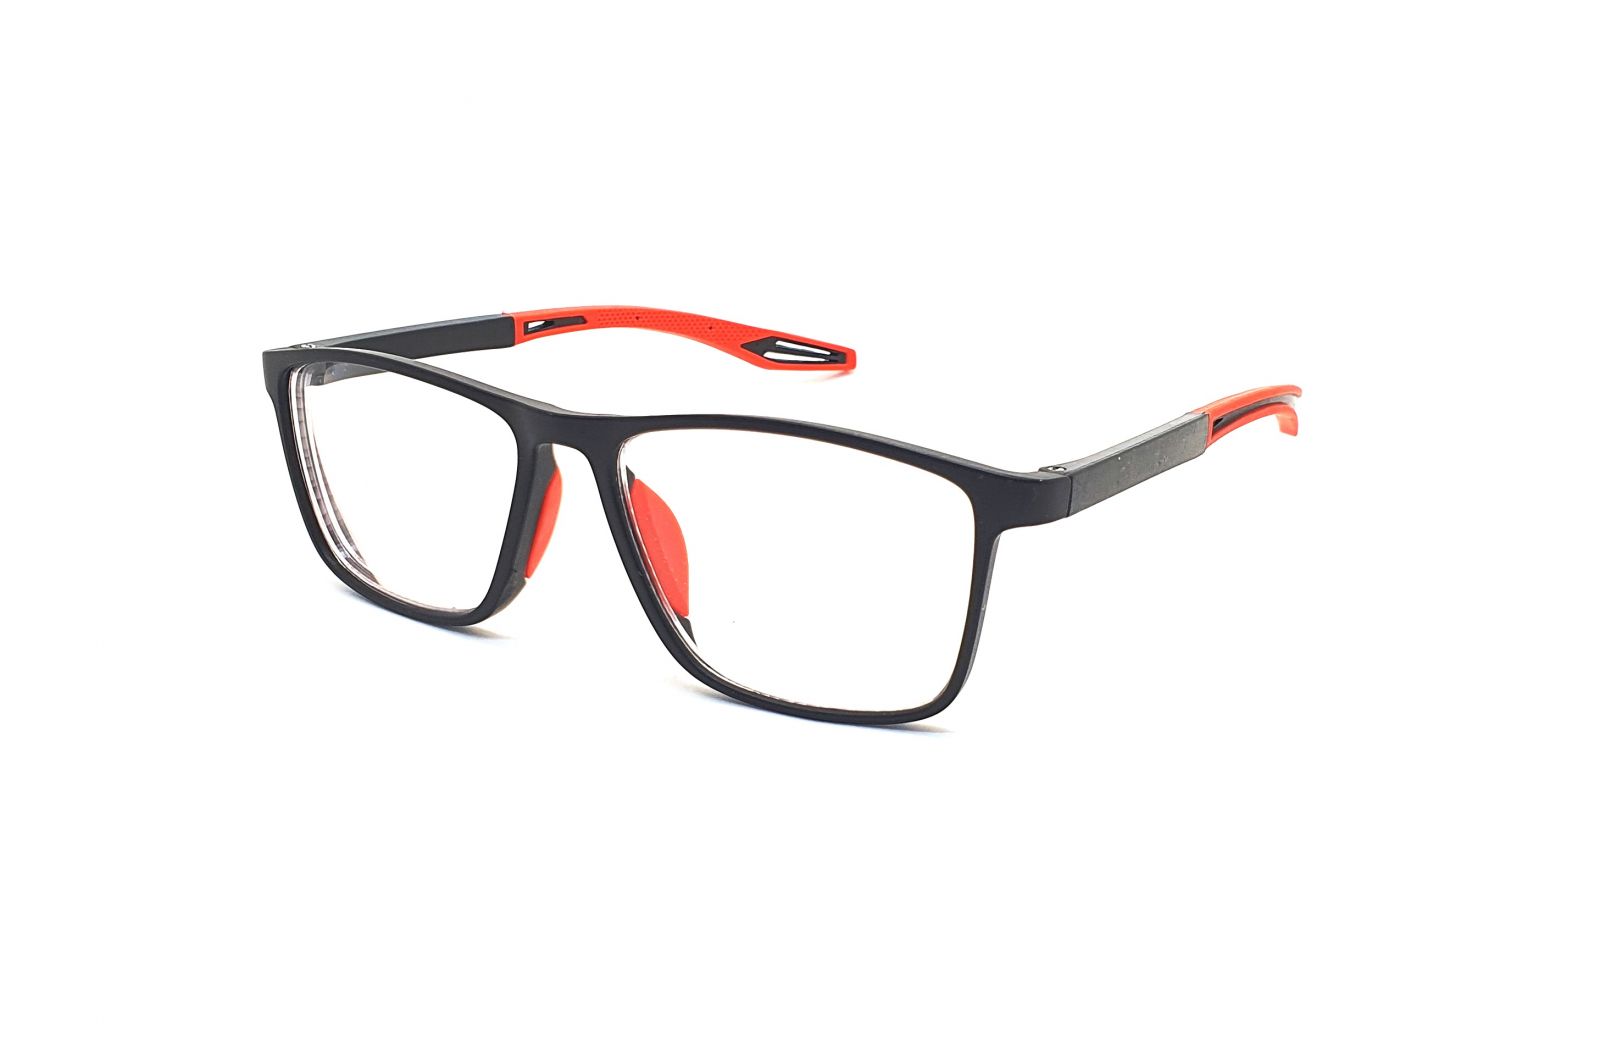 Samozabarvovací dioptrické brýle F04 / +2,50 black/red